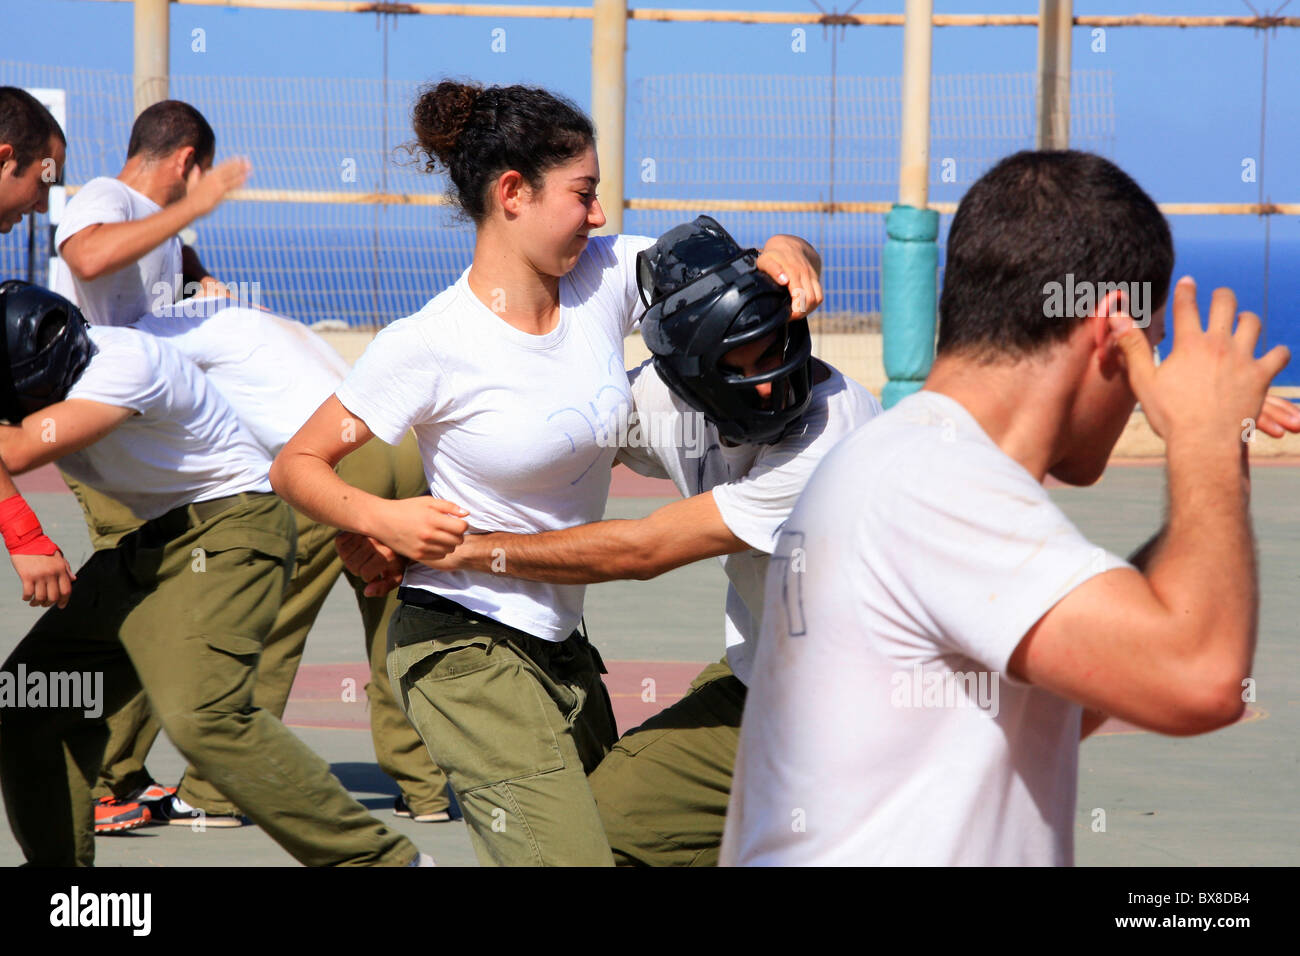 Israelische Soldaten trainieren mit Krav Maga ("Kontakt-Kampf", "close combat" oder "full Contact") einen waffenlosen Kampf-System Stockfoto